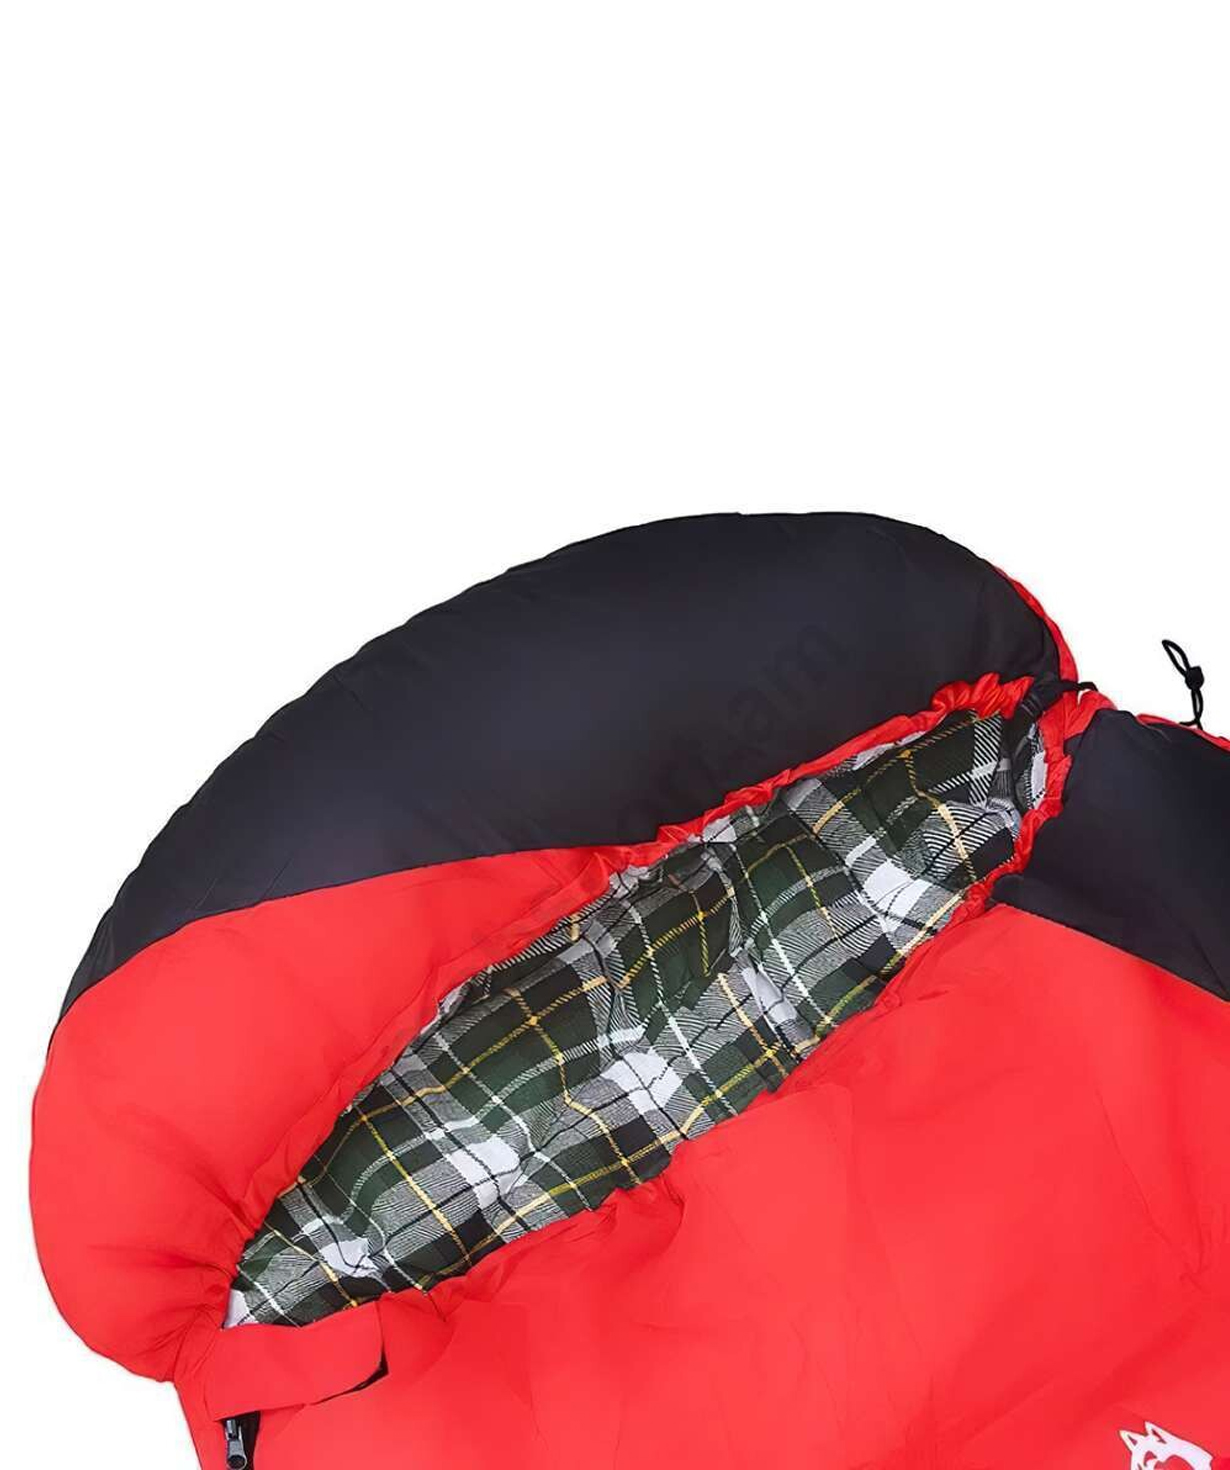 Спальный мешок «Mabsport» красный, -18 +0°С